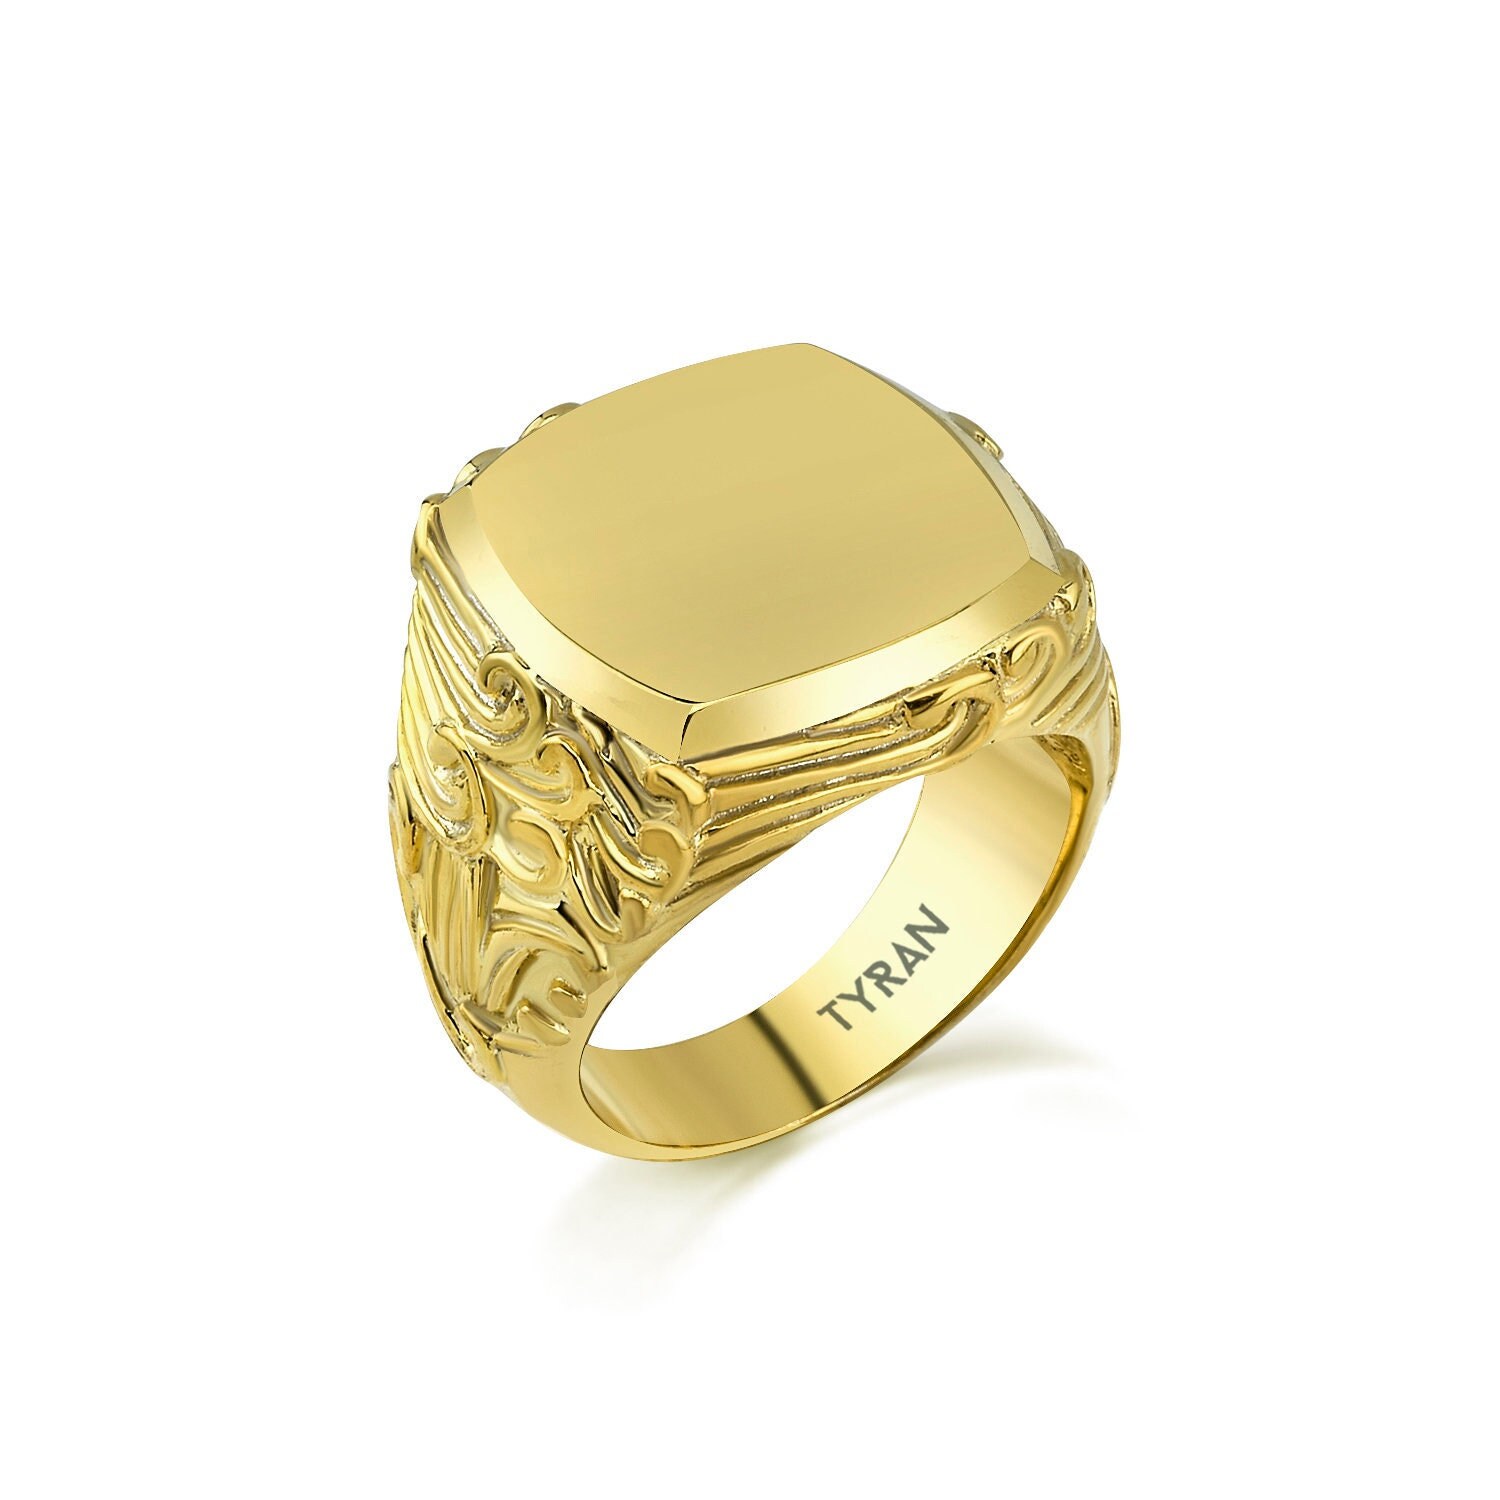 Unique Rings For Man Silver Gift For Man Bague Fleur De Lys Homme Chevaliere Homme Fleur De Lys Mens Signet Ring Man Rose Gold Pinky Ring